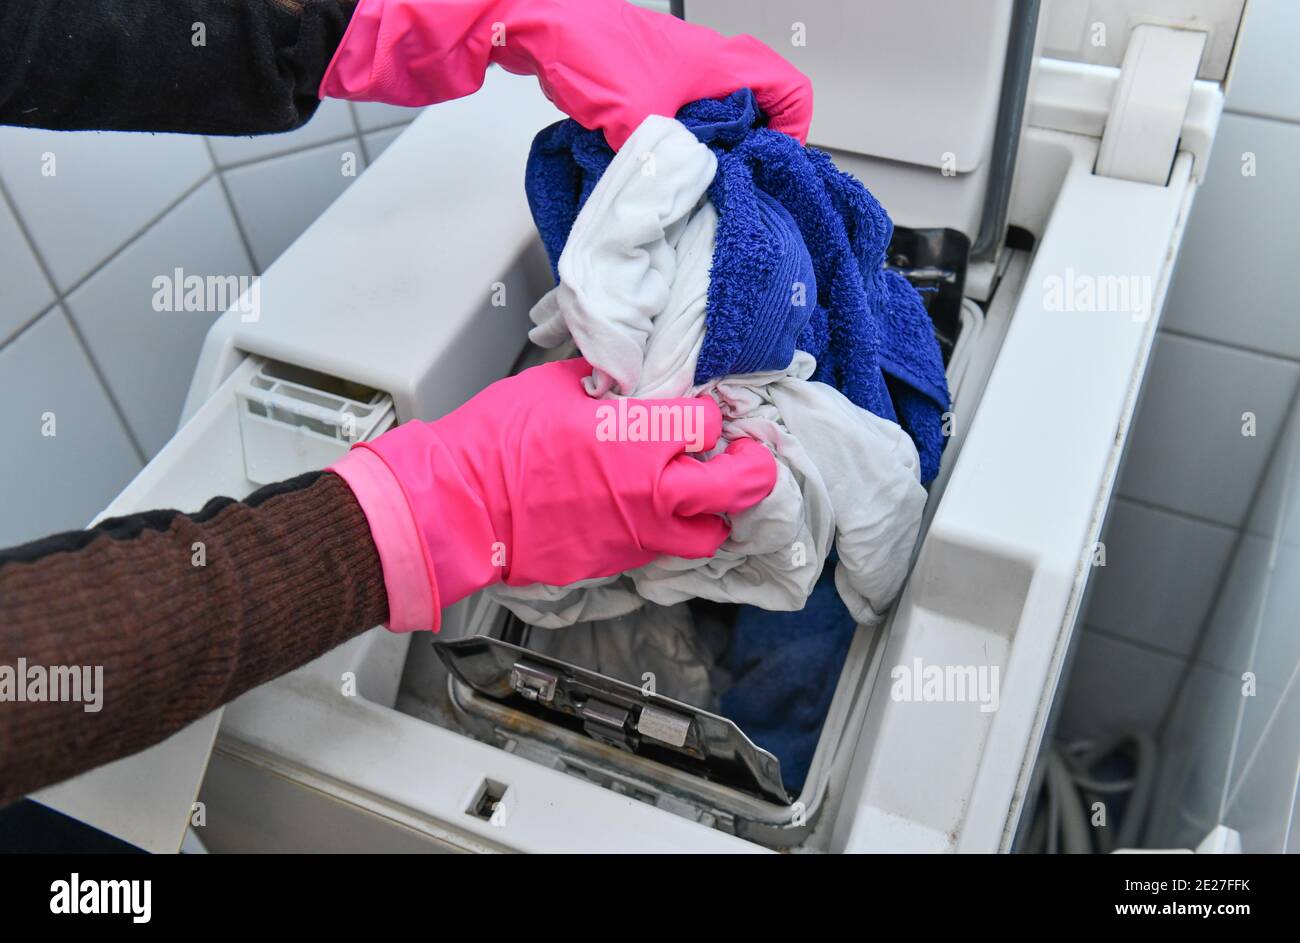 Waschmaschine einräumen Stock Photo